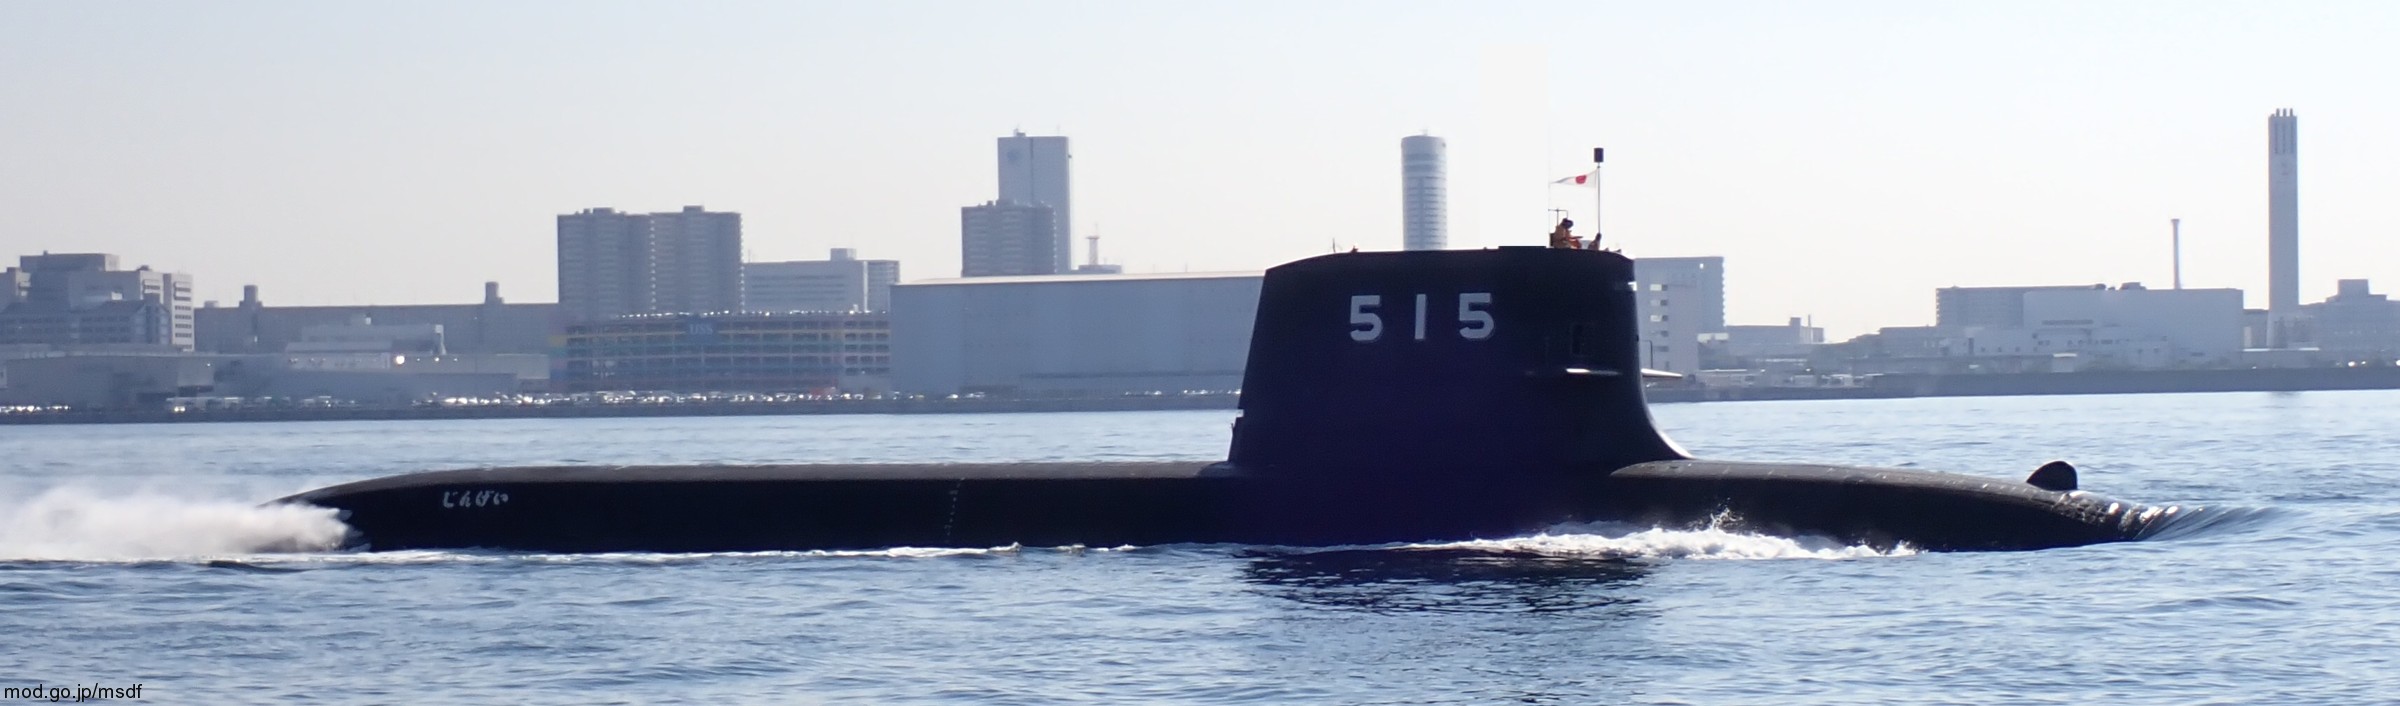 ss-515 js jingei taigei 29ss class attack submarine ssk aip japan maritime self defense force jmsdf 07